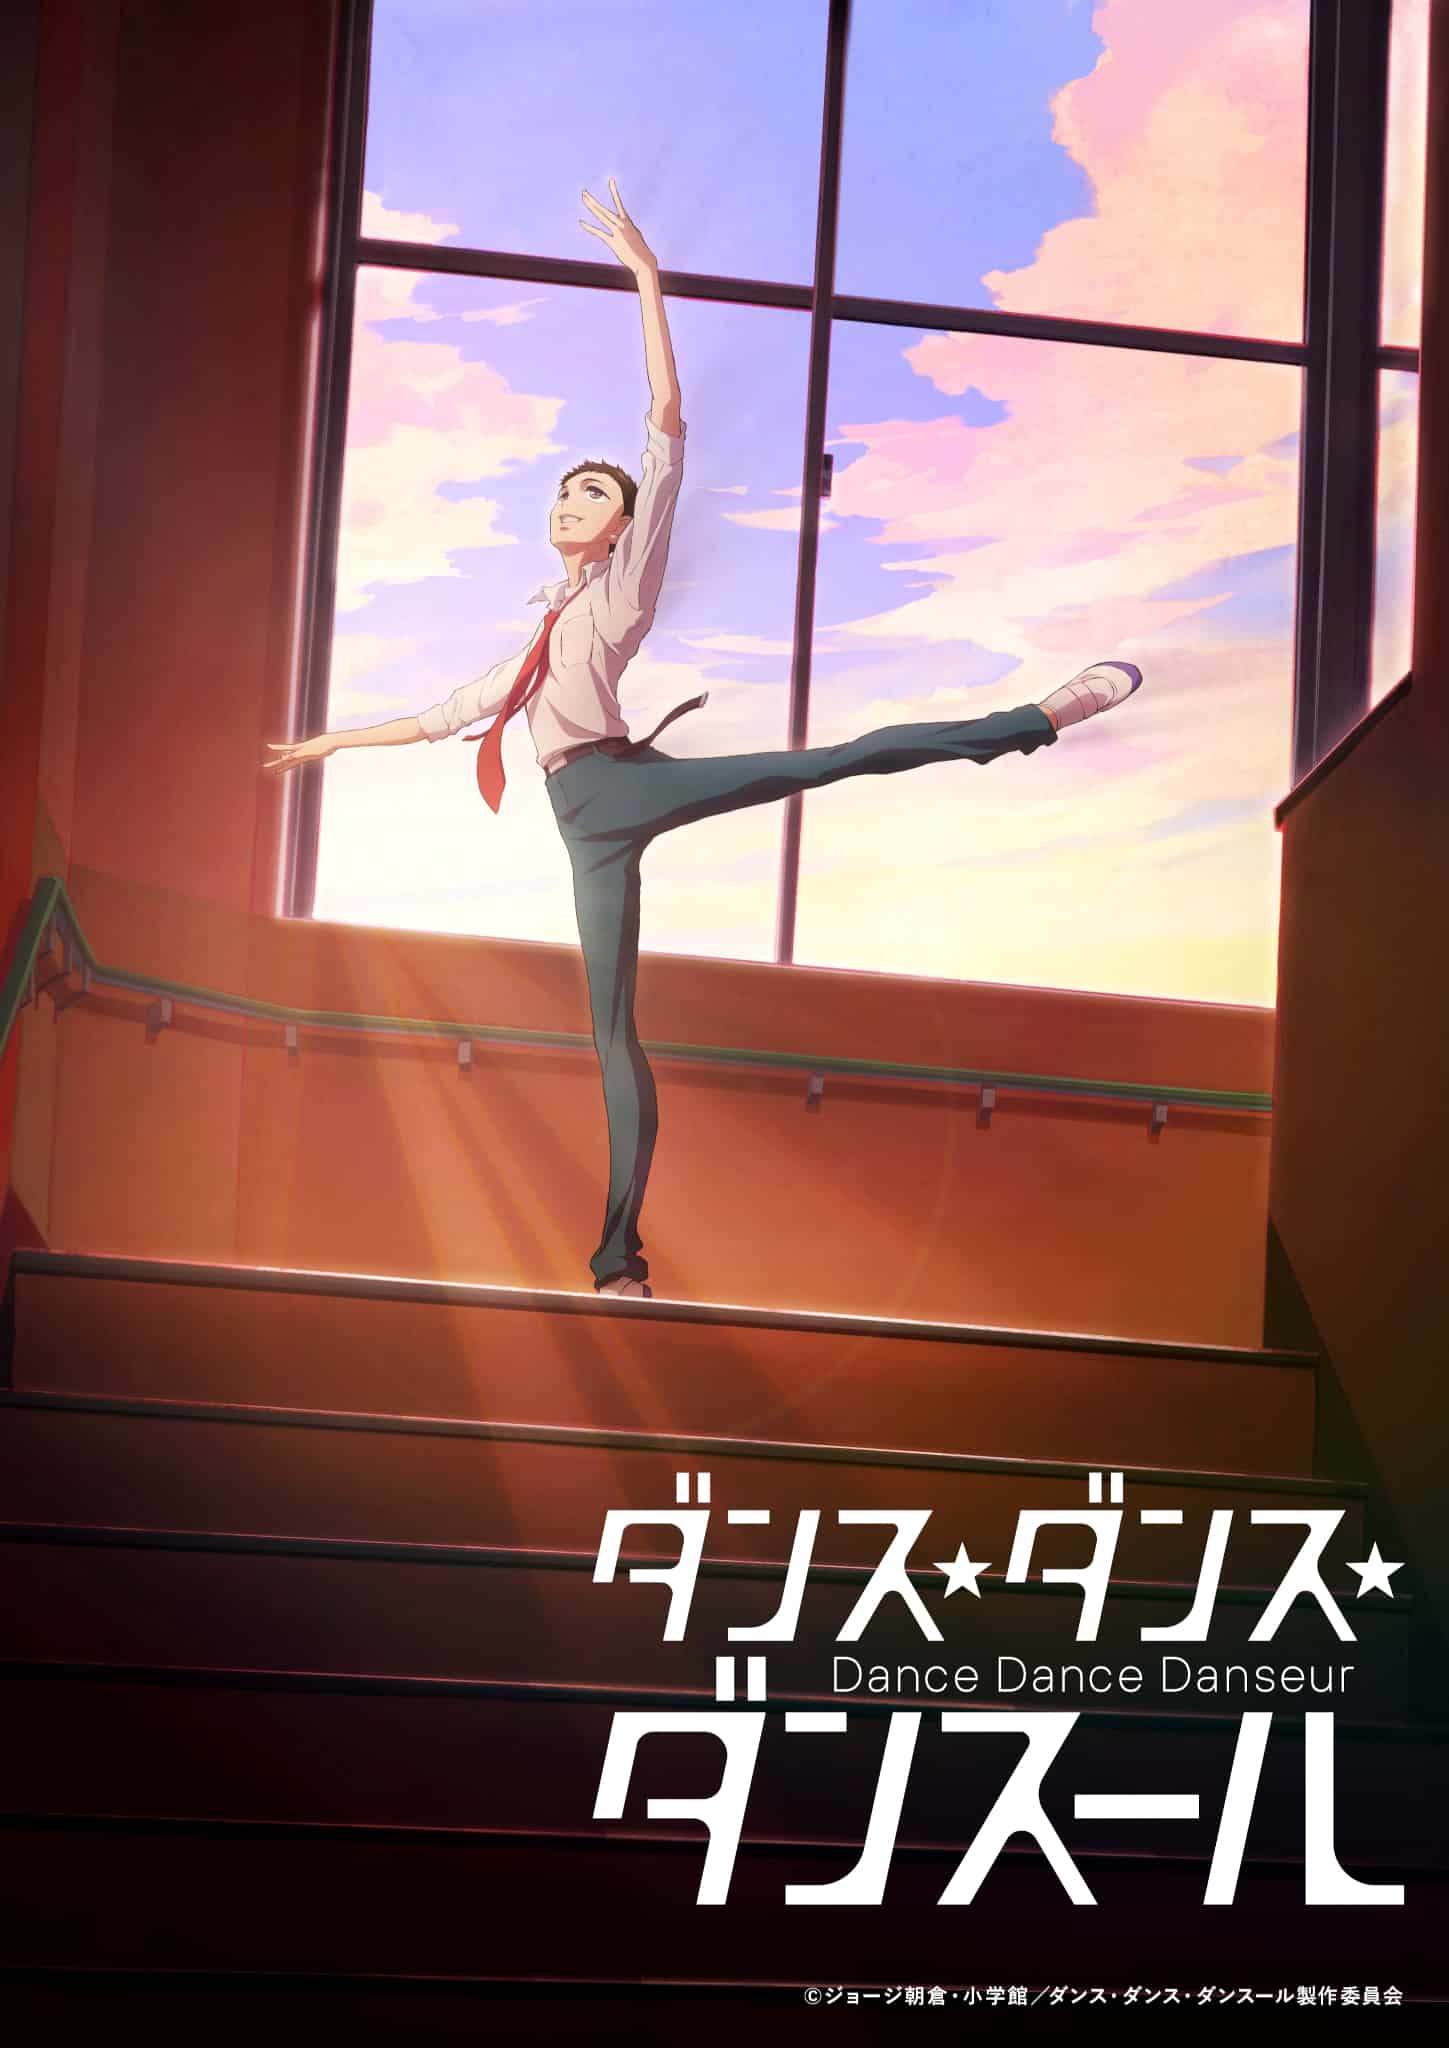 Premier visuel pour anime Dance Dance Danseur